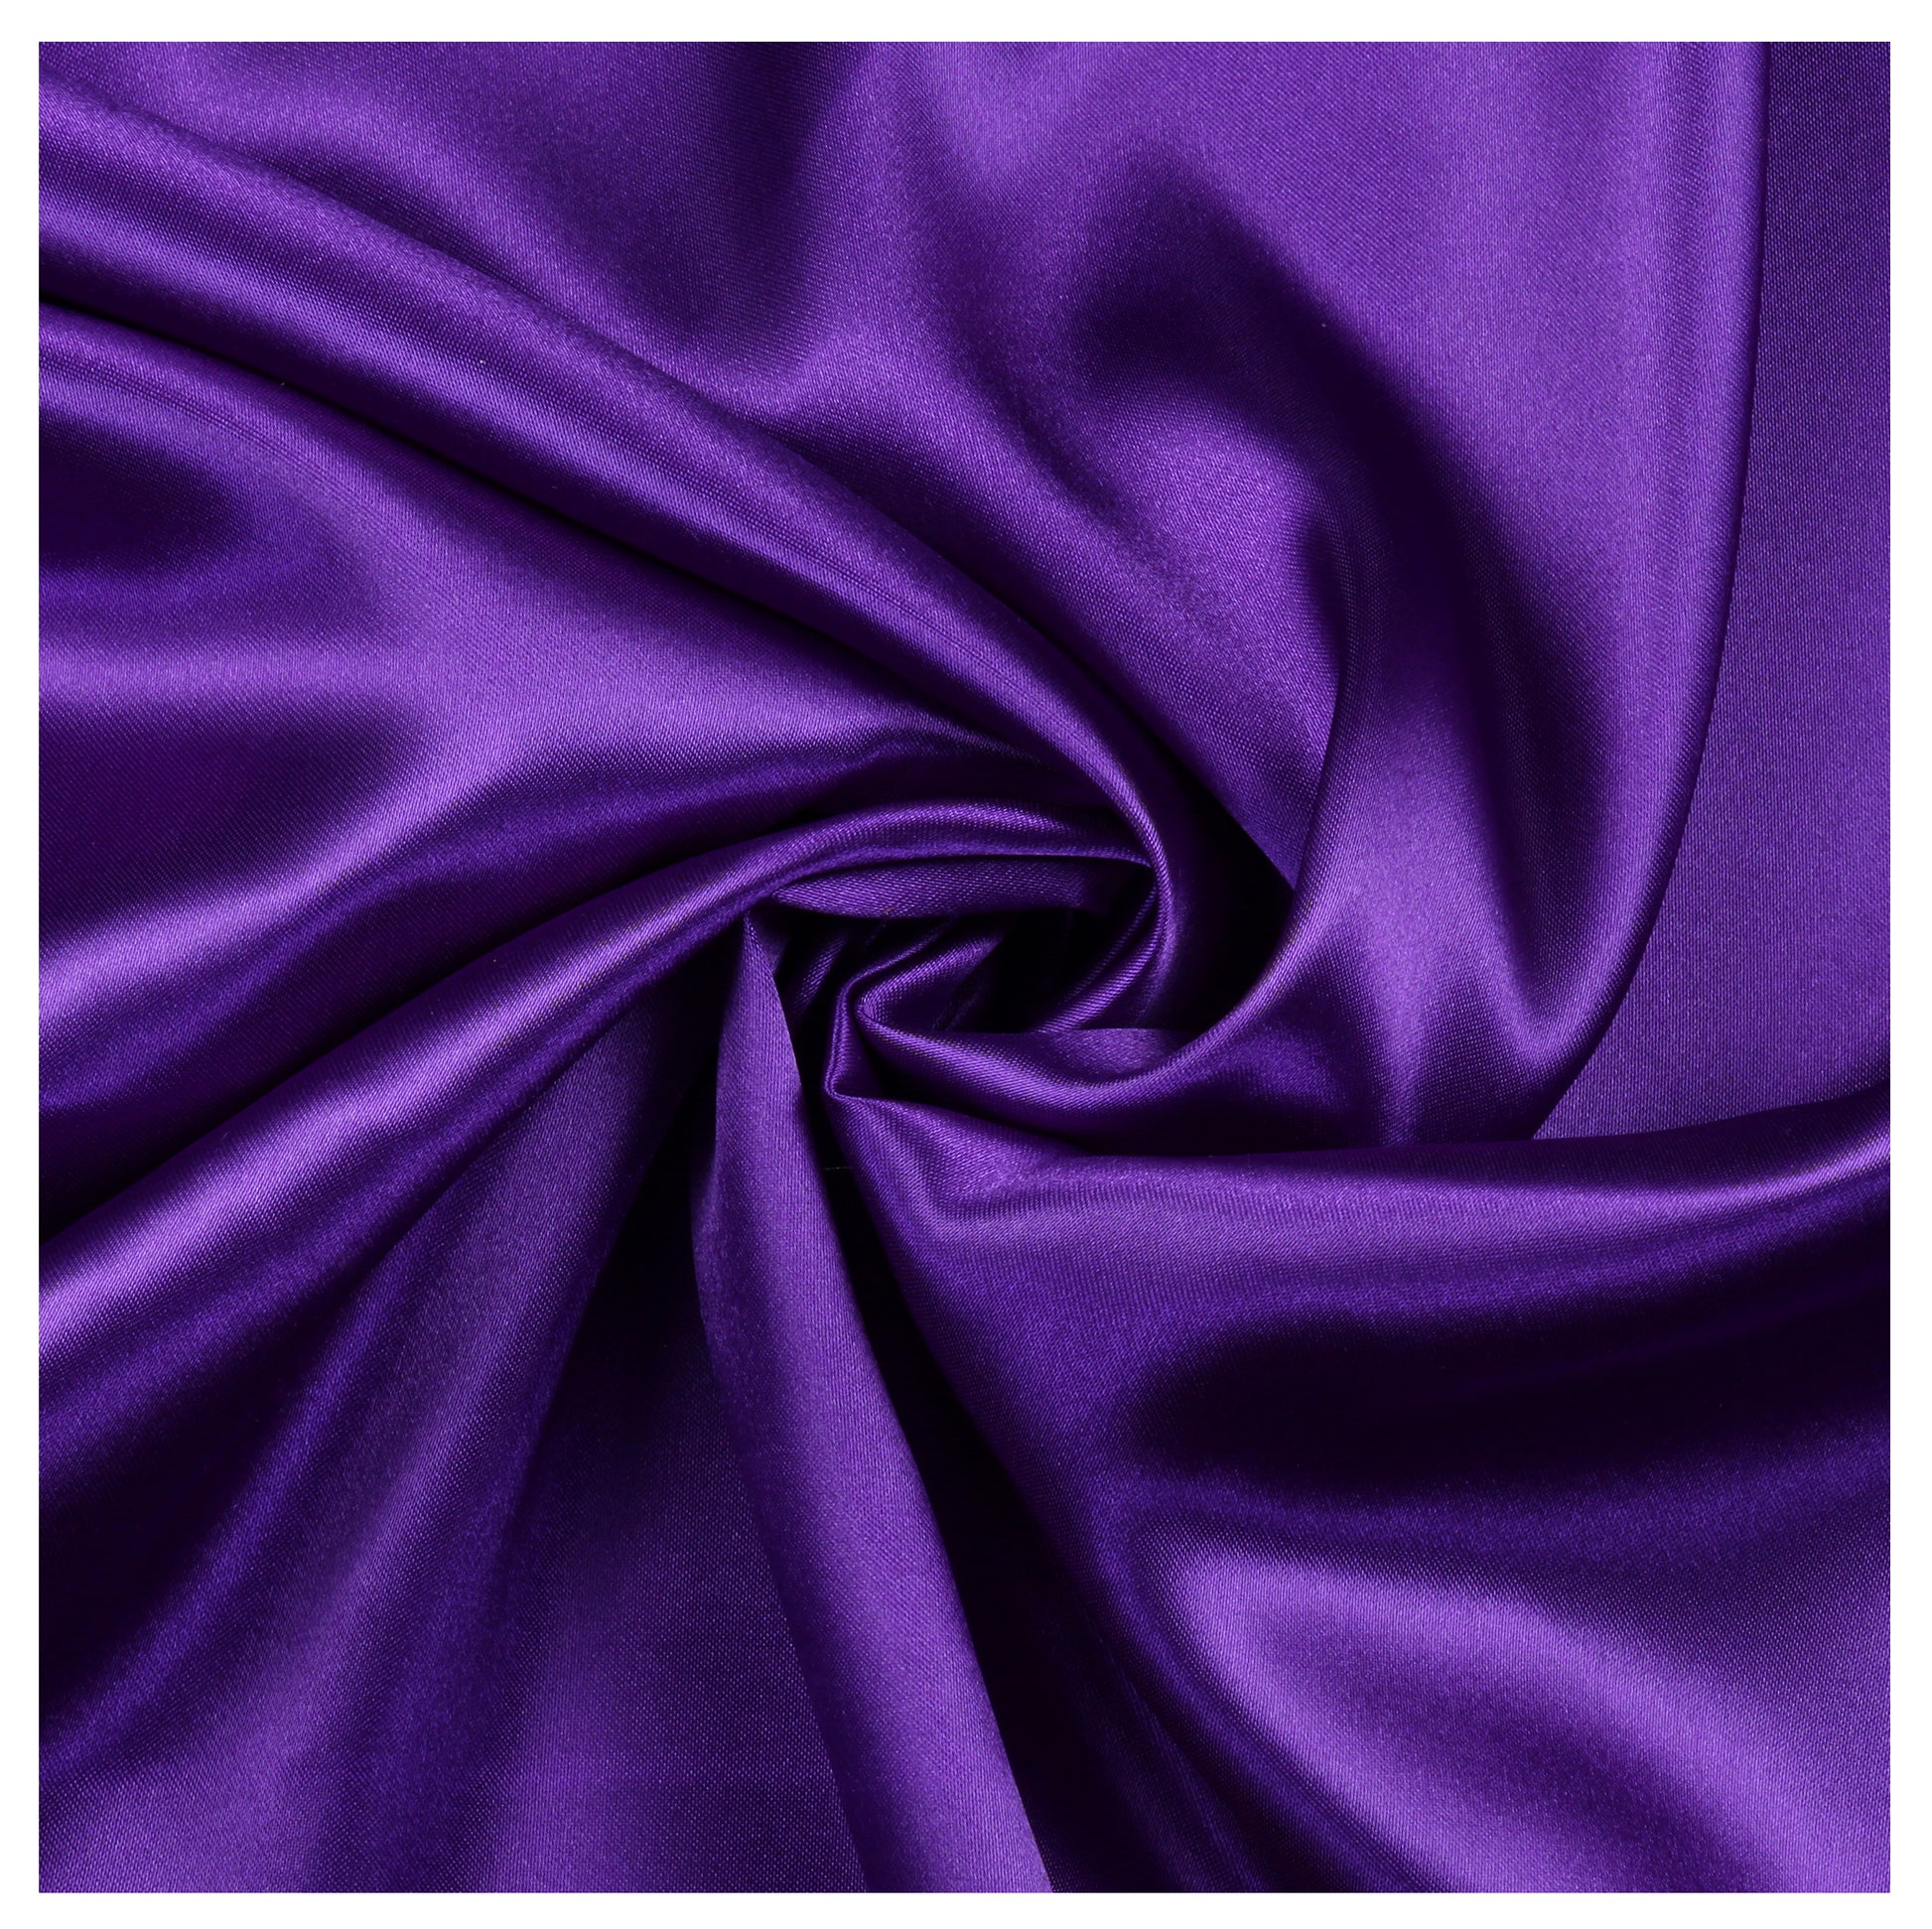 Cadbury Purple,cec987a3-ac4d-47b0-9abb-e037ebe034d7